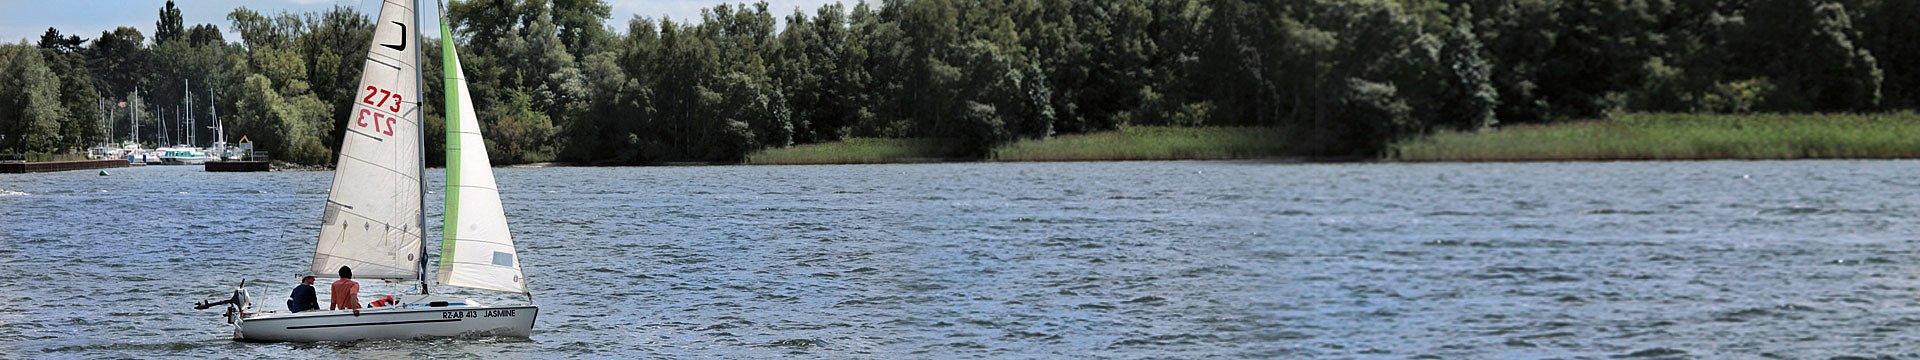 Eine Jolle segelt über einen See.